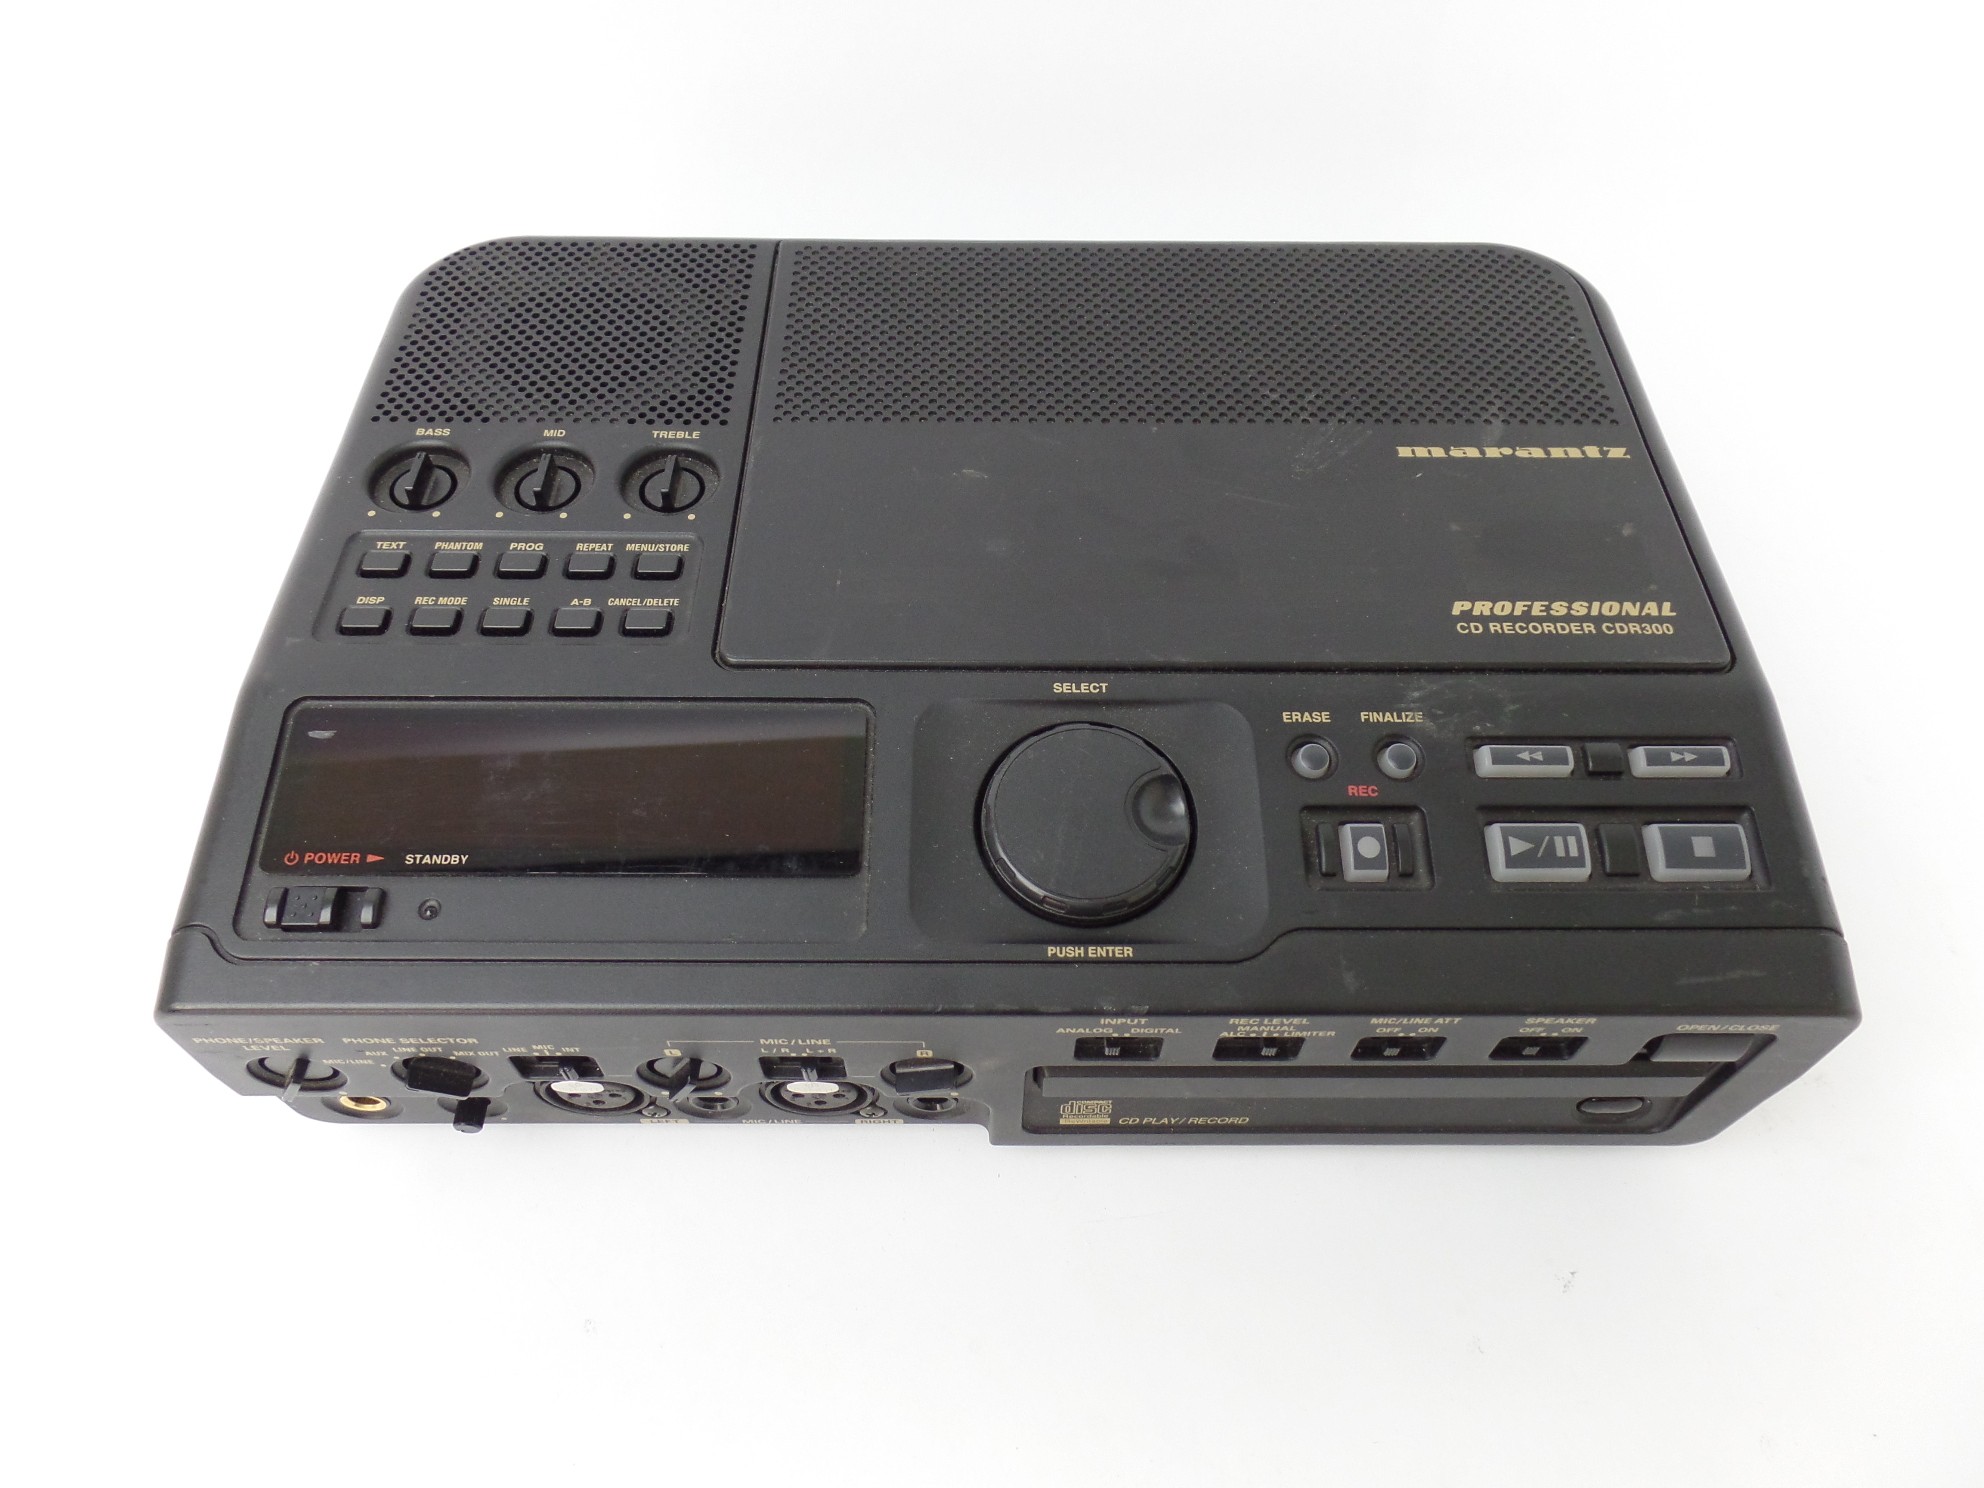 Marantz CDR300/U1B Professional CD Recorder Does Not Read Disc For Parts